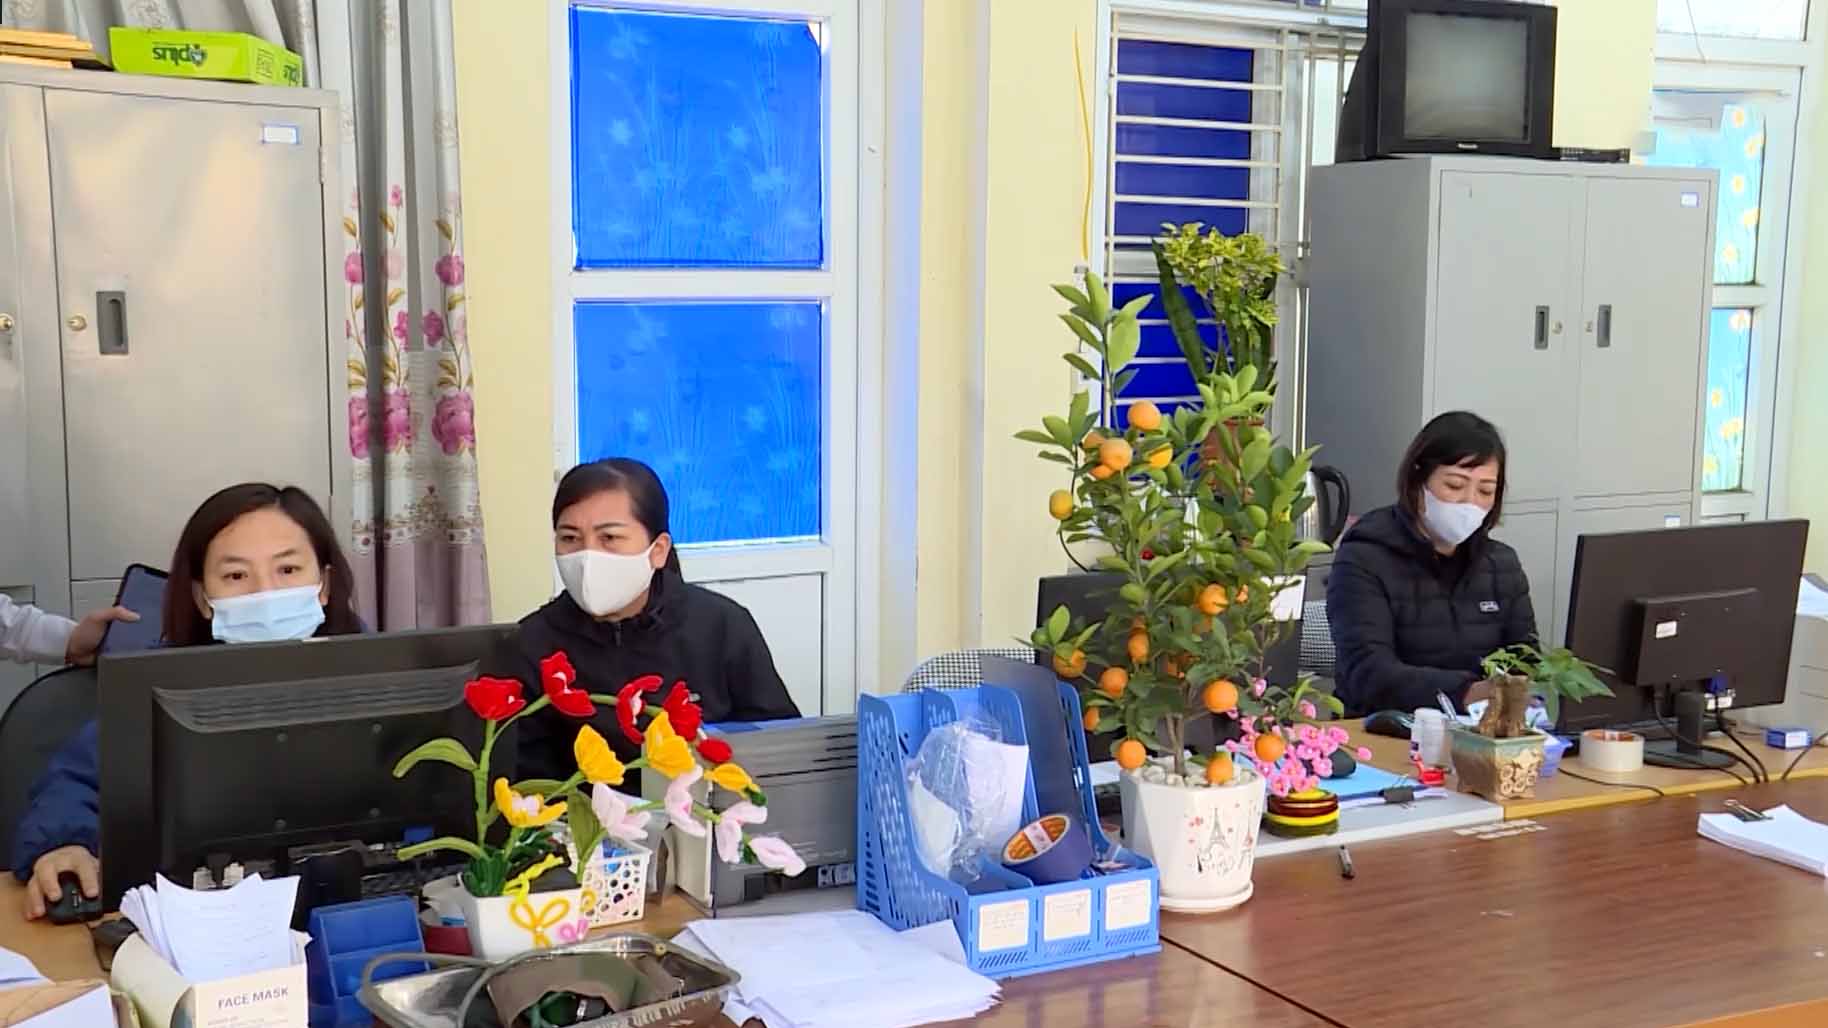 Cán bộ trạm y tế xã Quỳnh Phú phải đeo khẩu trang trong giờ làm việc do không chịu được mùi khói xả từ cơ sở sản xuất mỳ gạo. Ảnh: Vân Trường